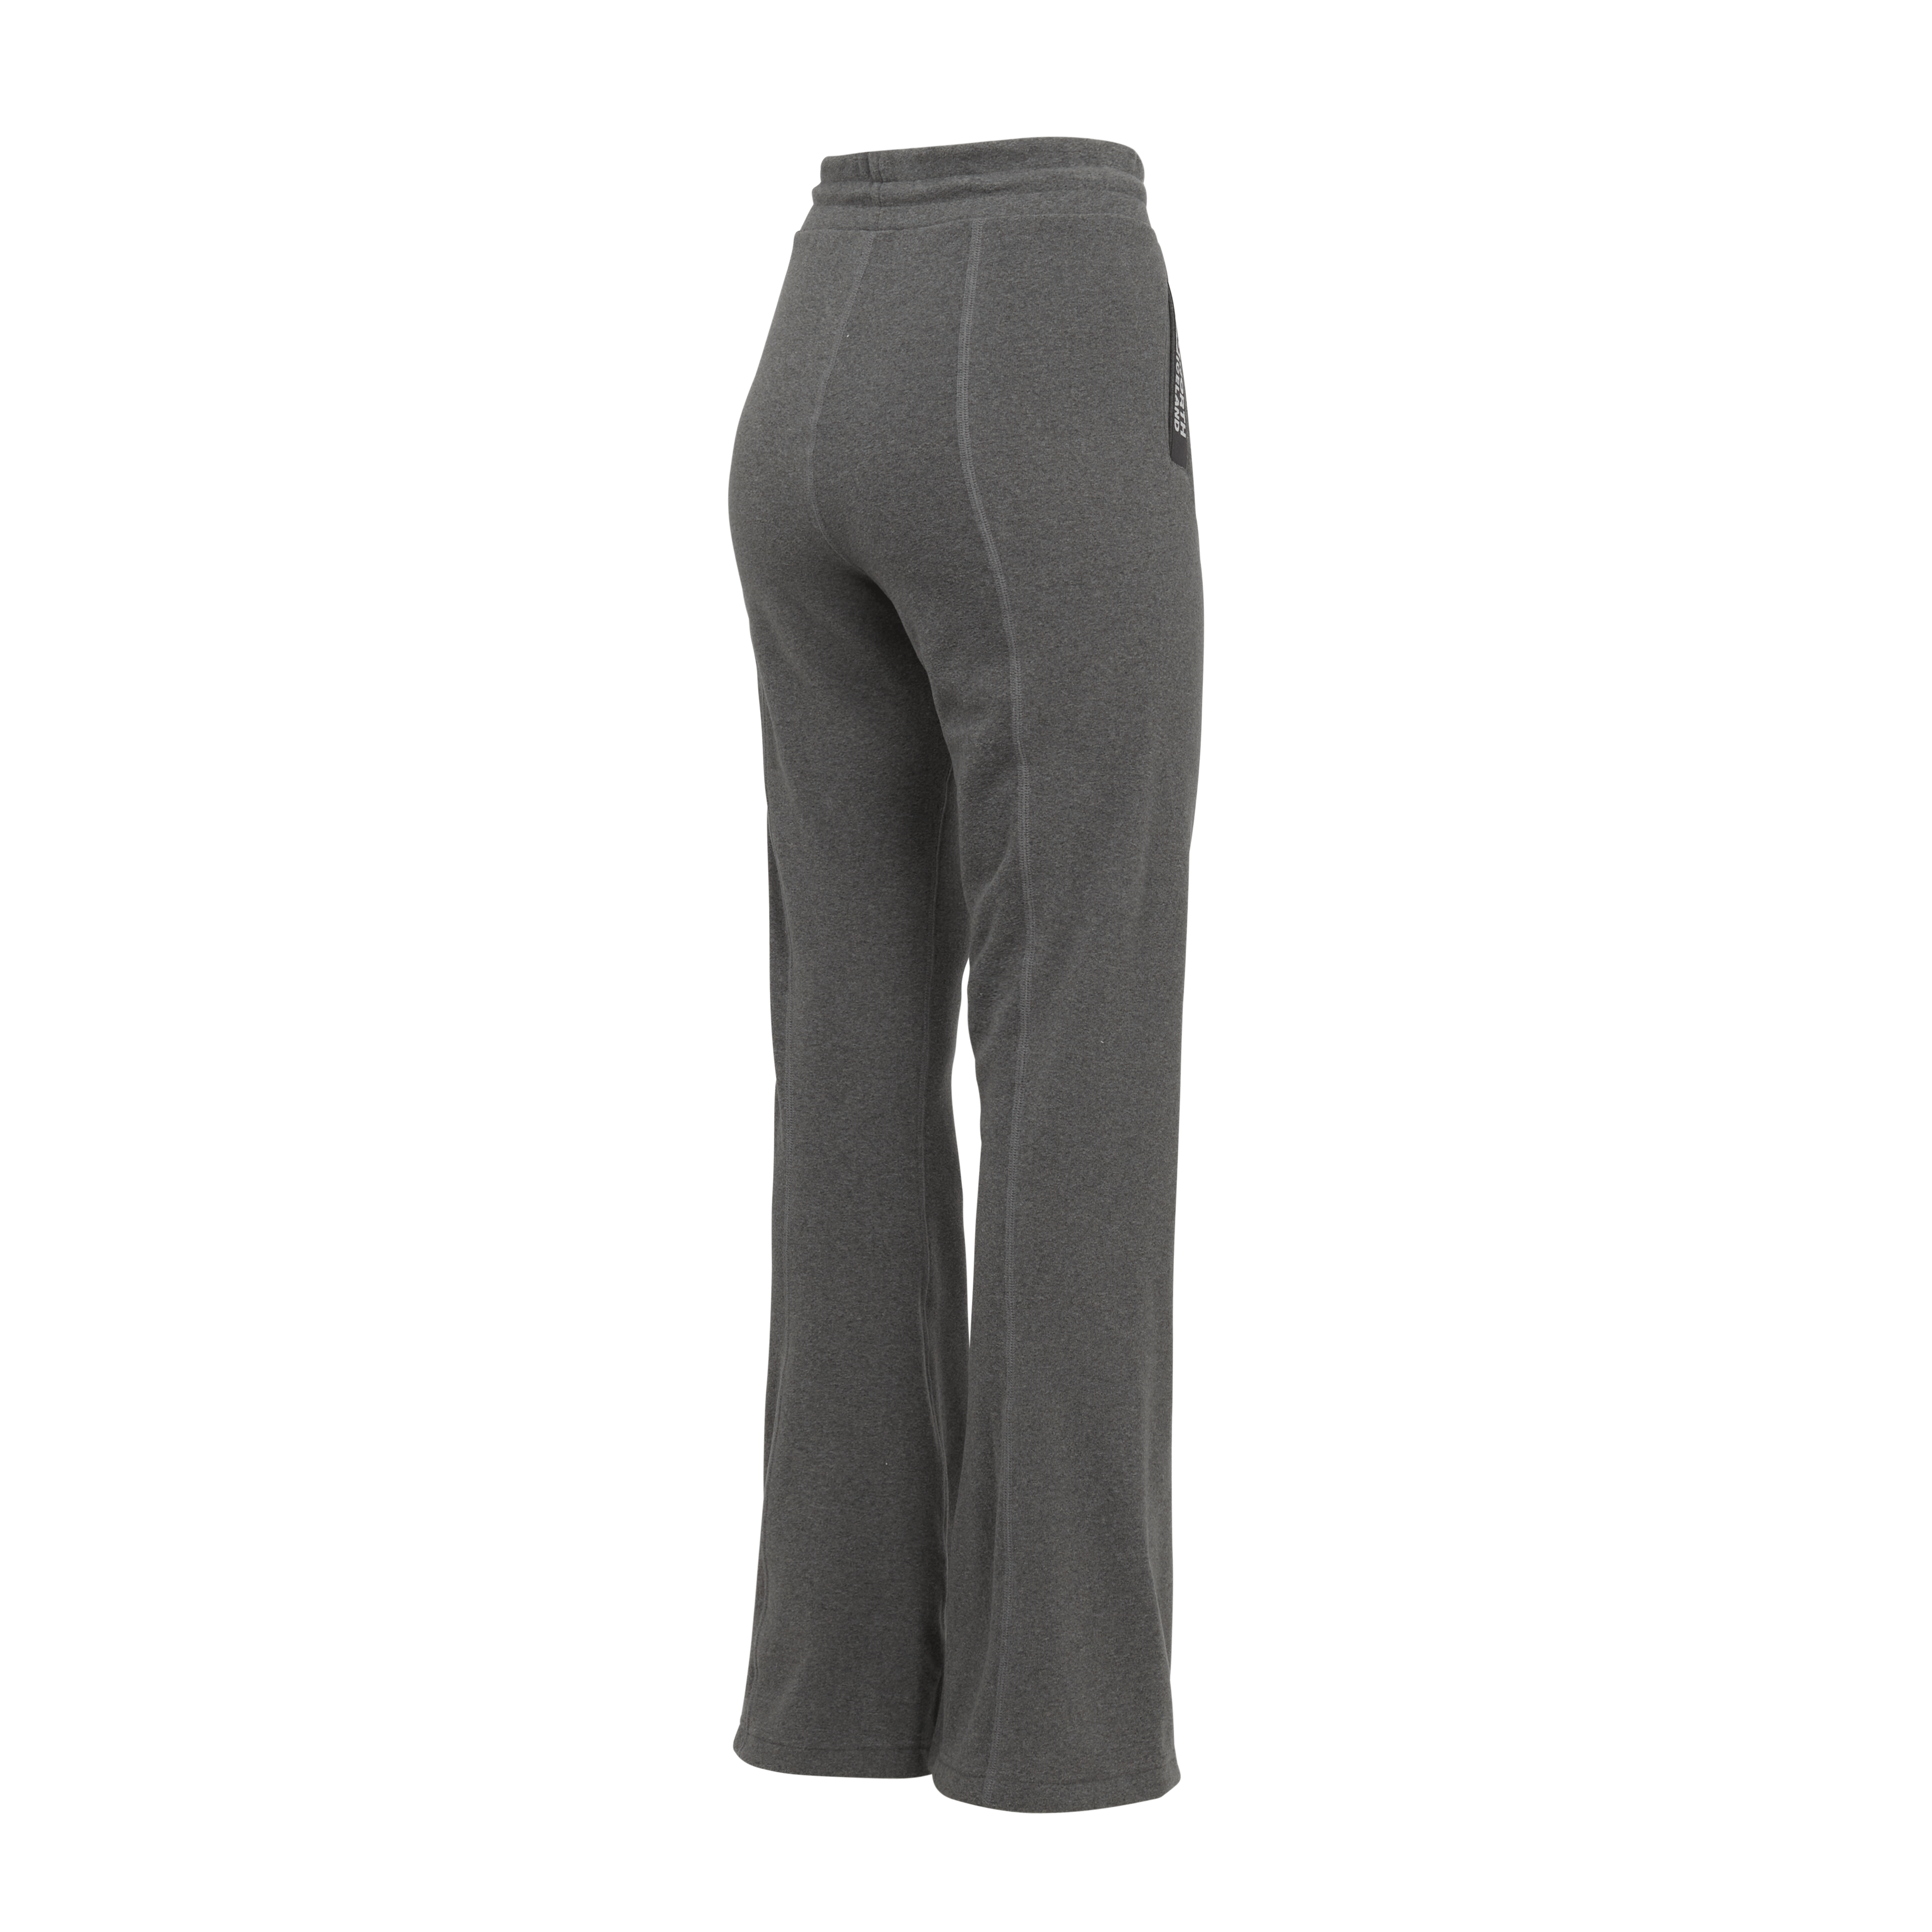  Tek Gear Fleece Pants Women